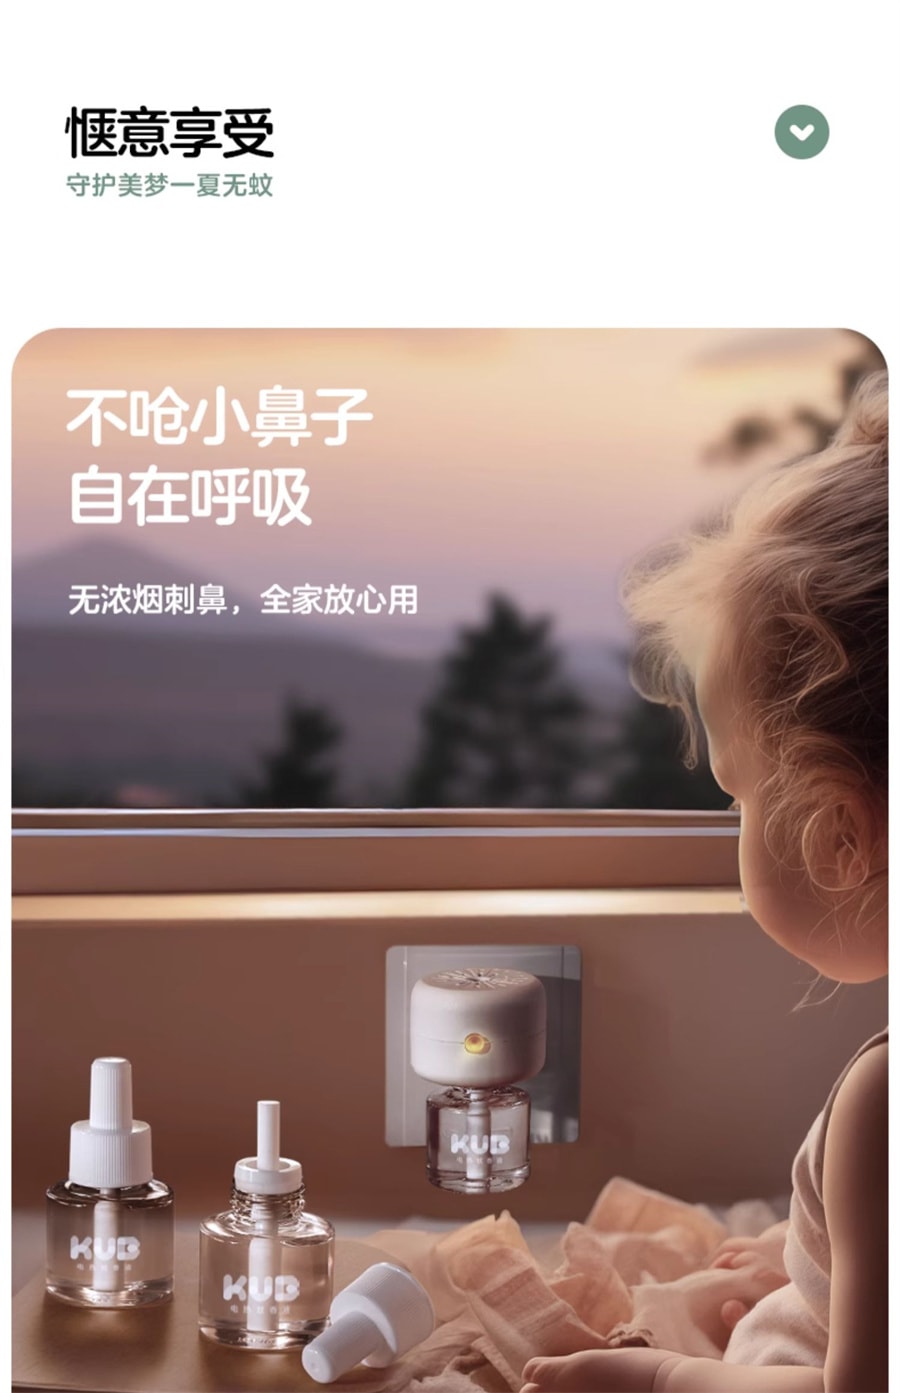 【中国直邮】KUB可优比  电热蚊香液无味婴儿孕妇儿童宝宝专用驱蚊液防蚊品家用  3液1器